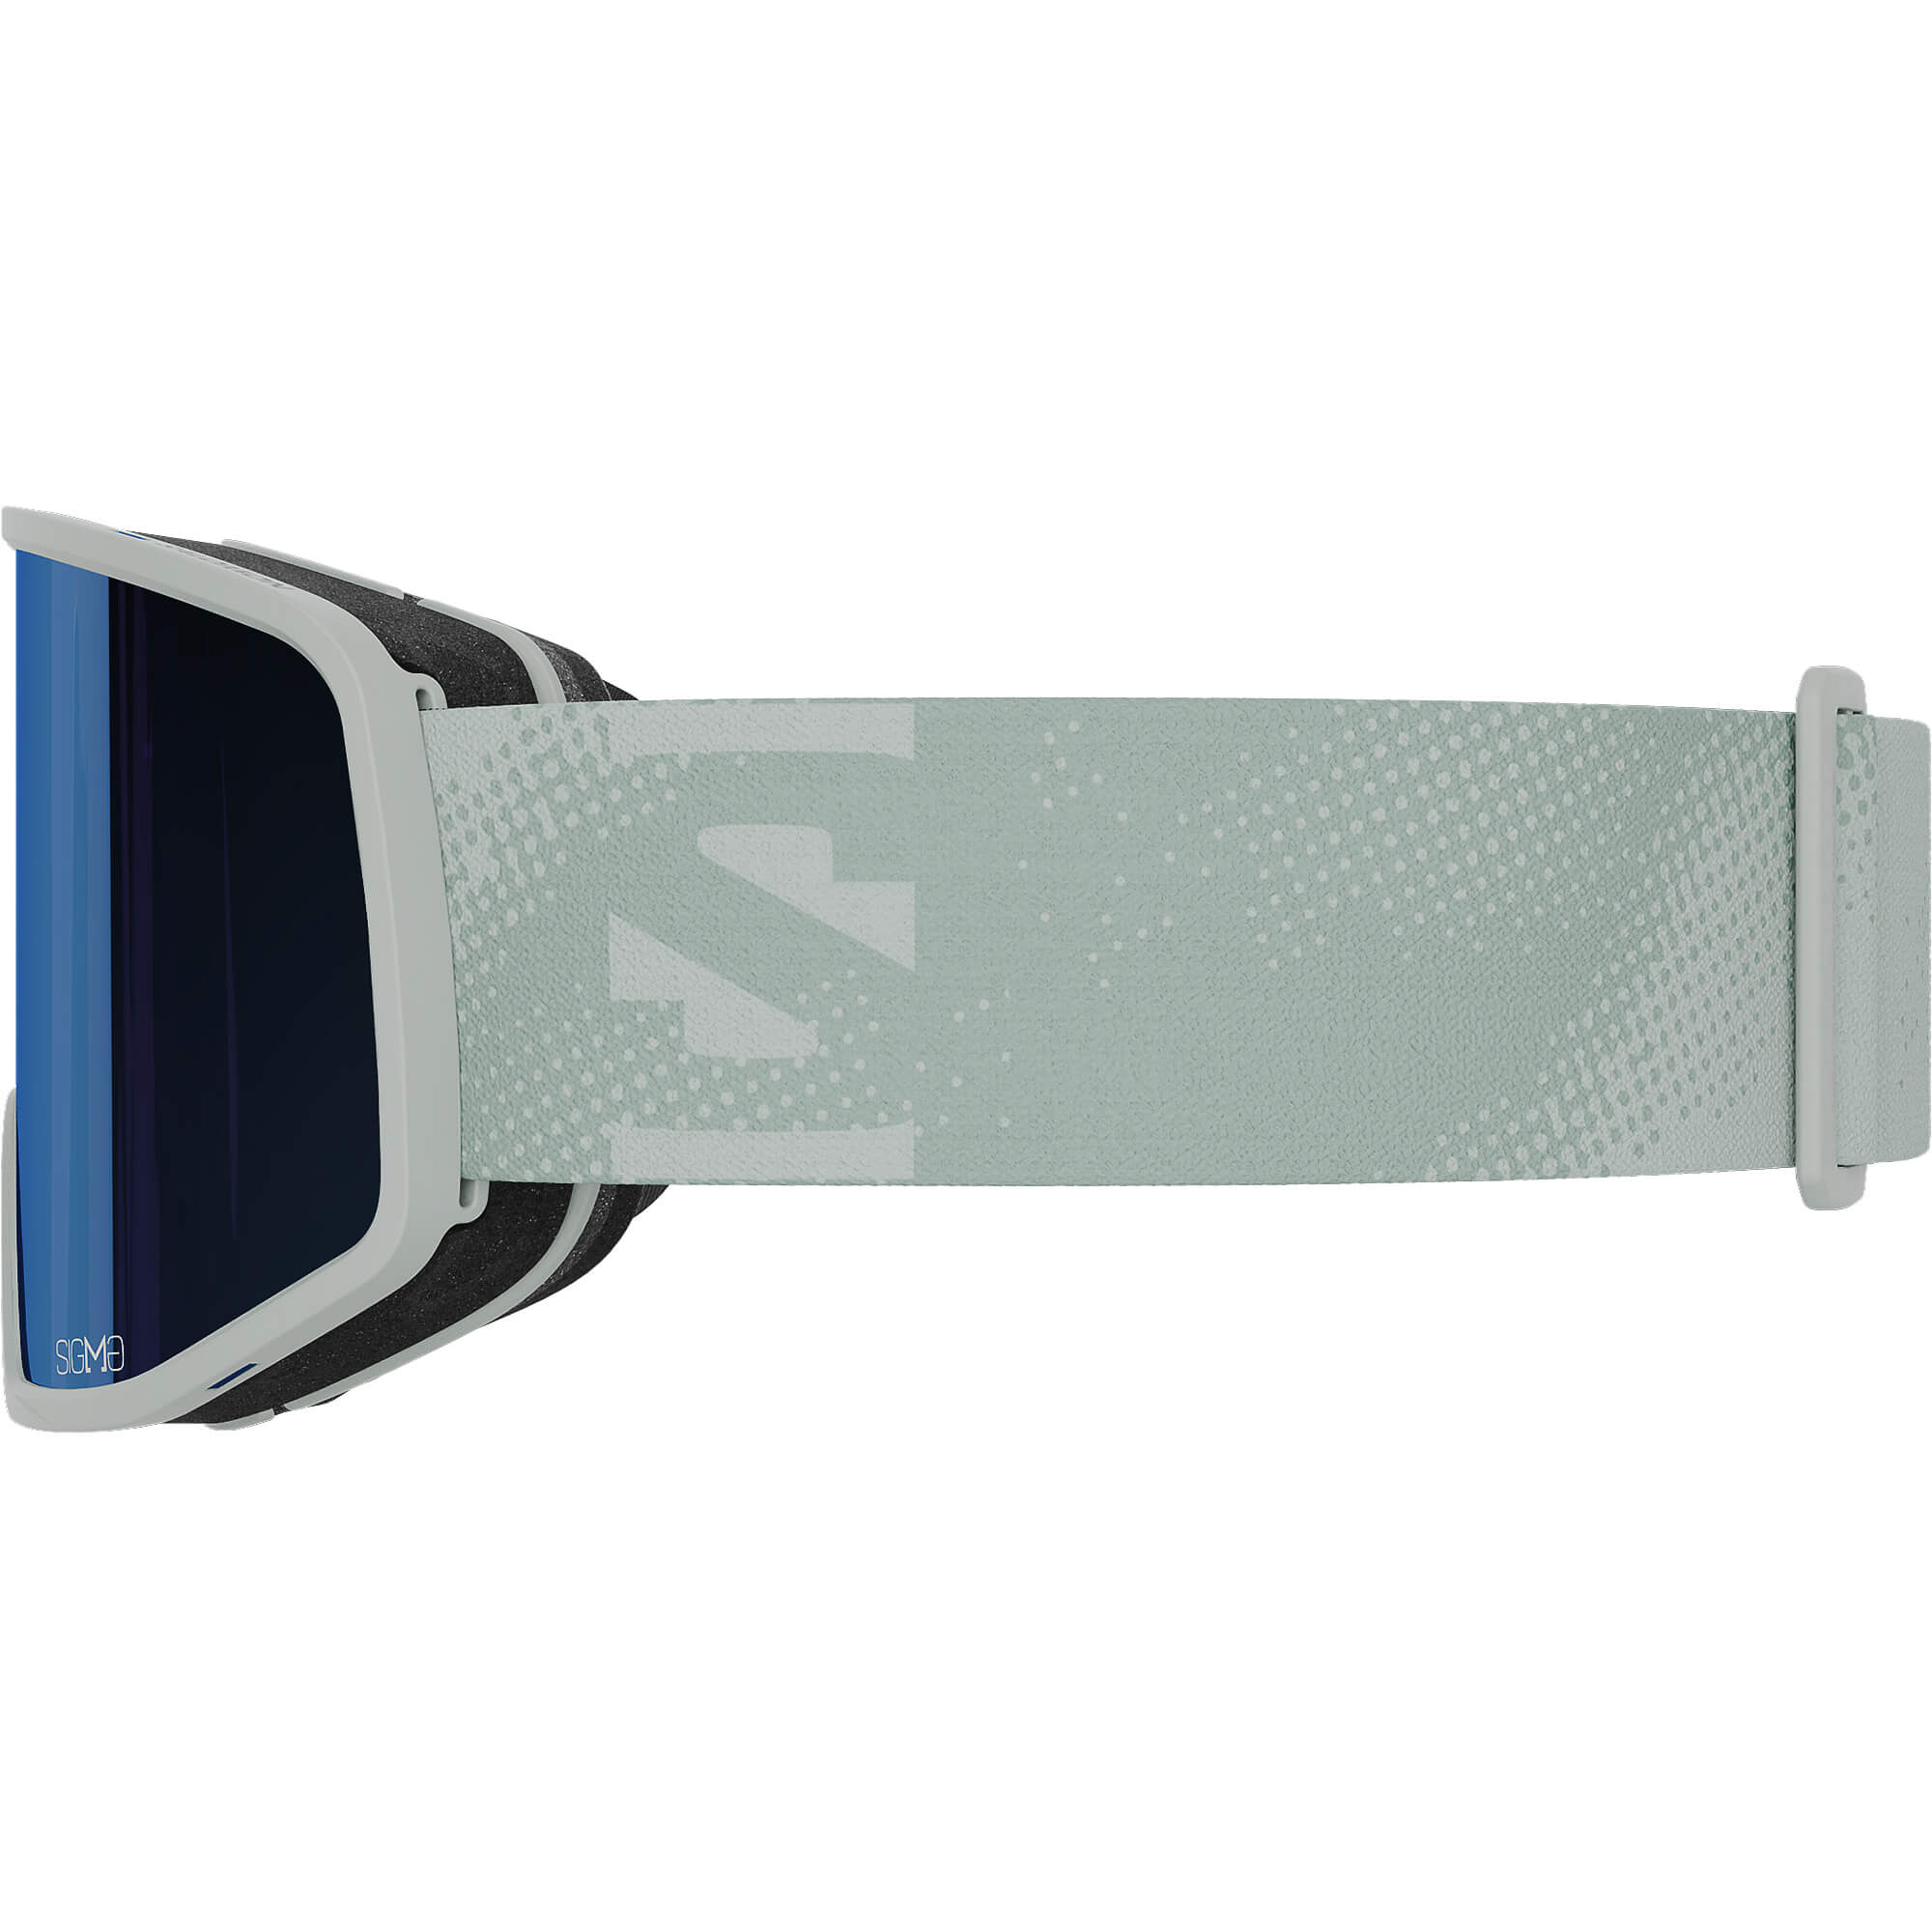 Salomon Sentry Pro Sigma Snowboard/Ski Goggles